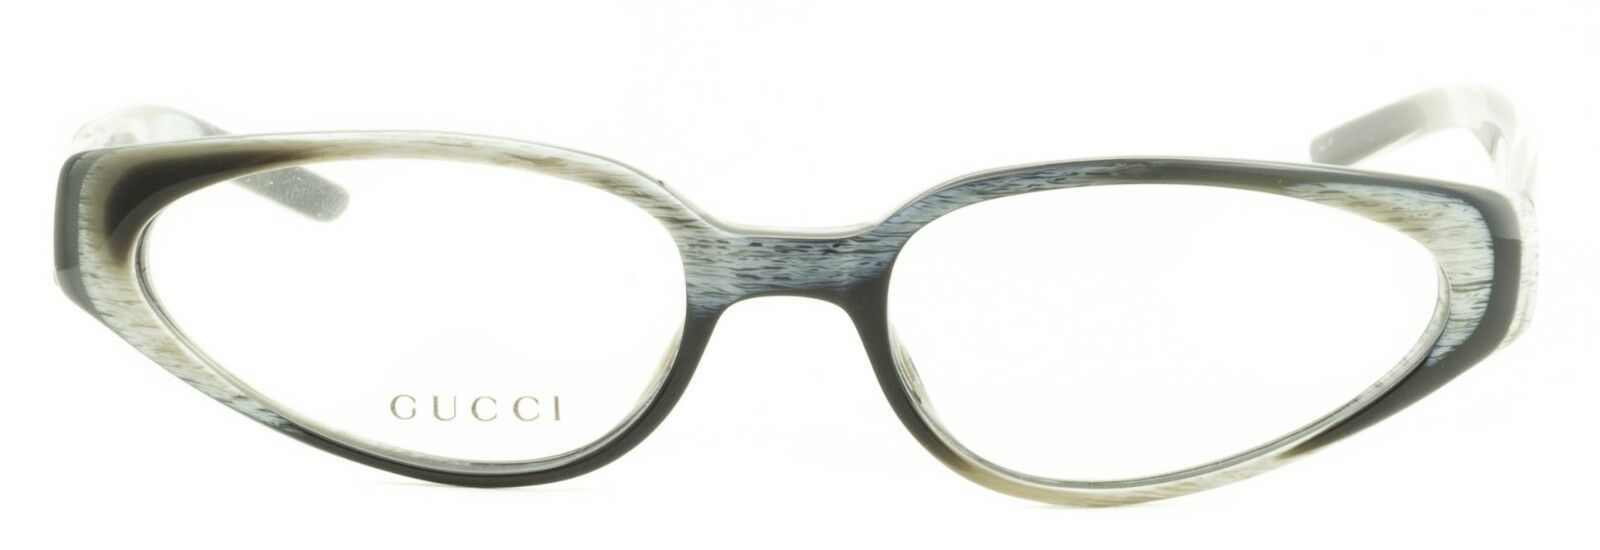 GUCCI GG 2483 5MY Eyewear FRAMES NEW Glasses RX Optical Eyeglasses ITALY - BNIB